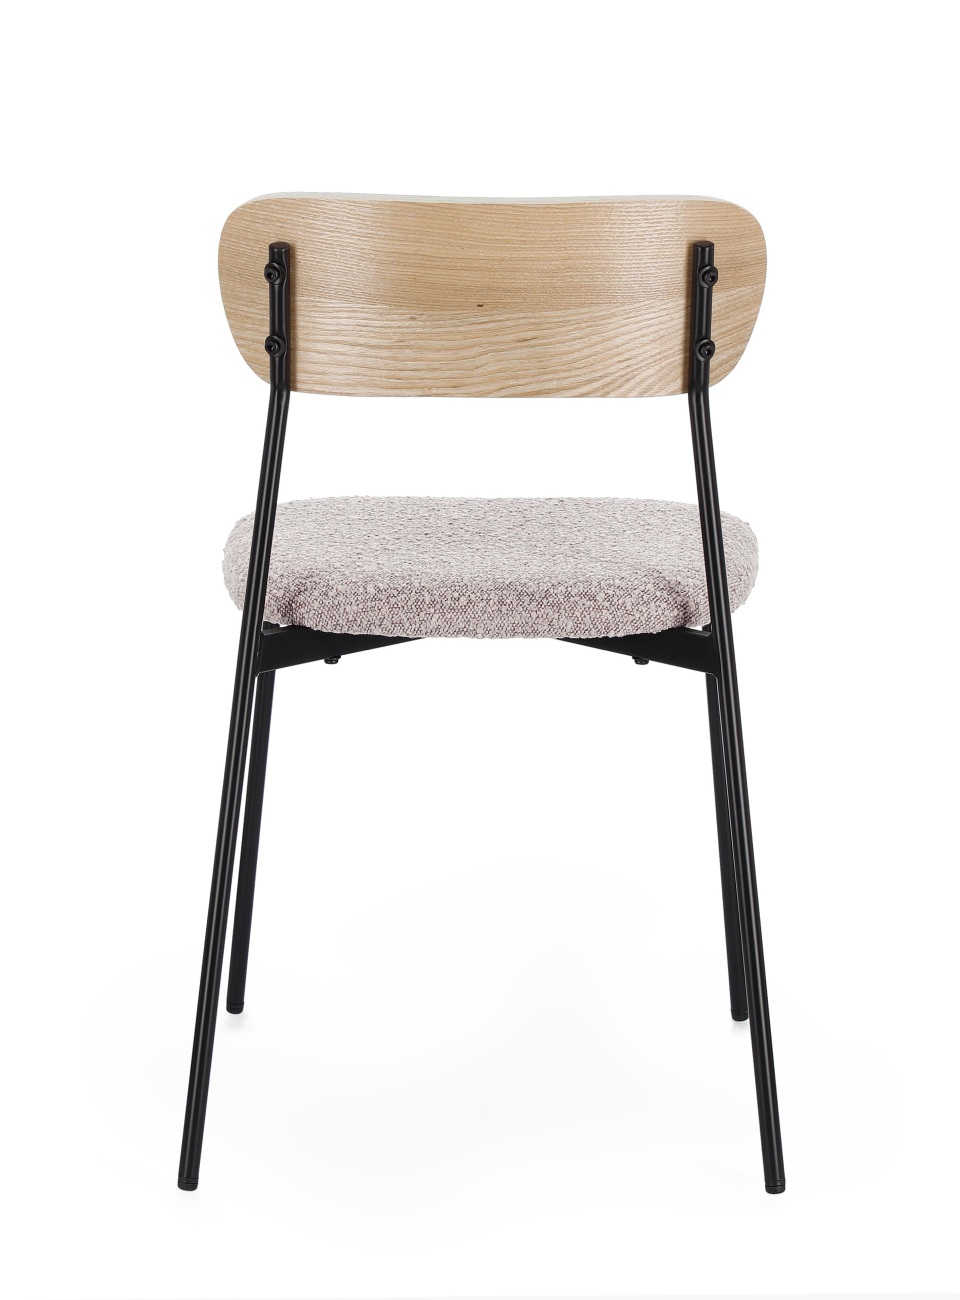 Der Esszimmerstuhl Genevieve überzeugt mit seinem modernen Stil. Gefertigt wurde er aus Boucle-Stoff, welcher einen braunen Farbton besitzt. Das Gestell ist aus Metall und hat eine schwarze Farbe. Der Stuhl besitzt eine Sitzhöhe von 48 cm.